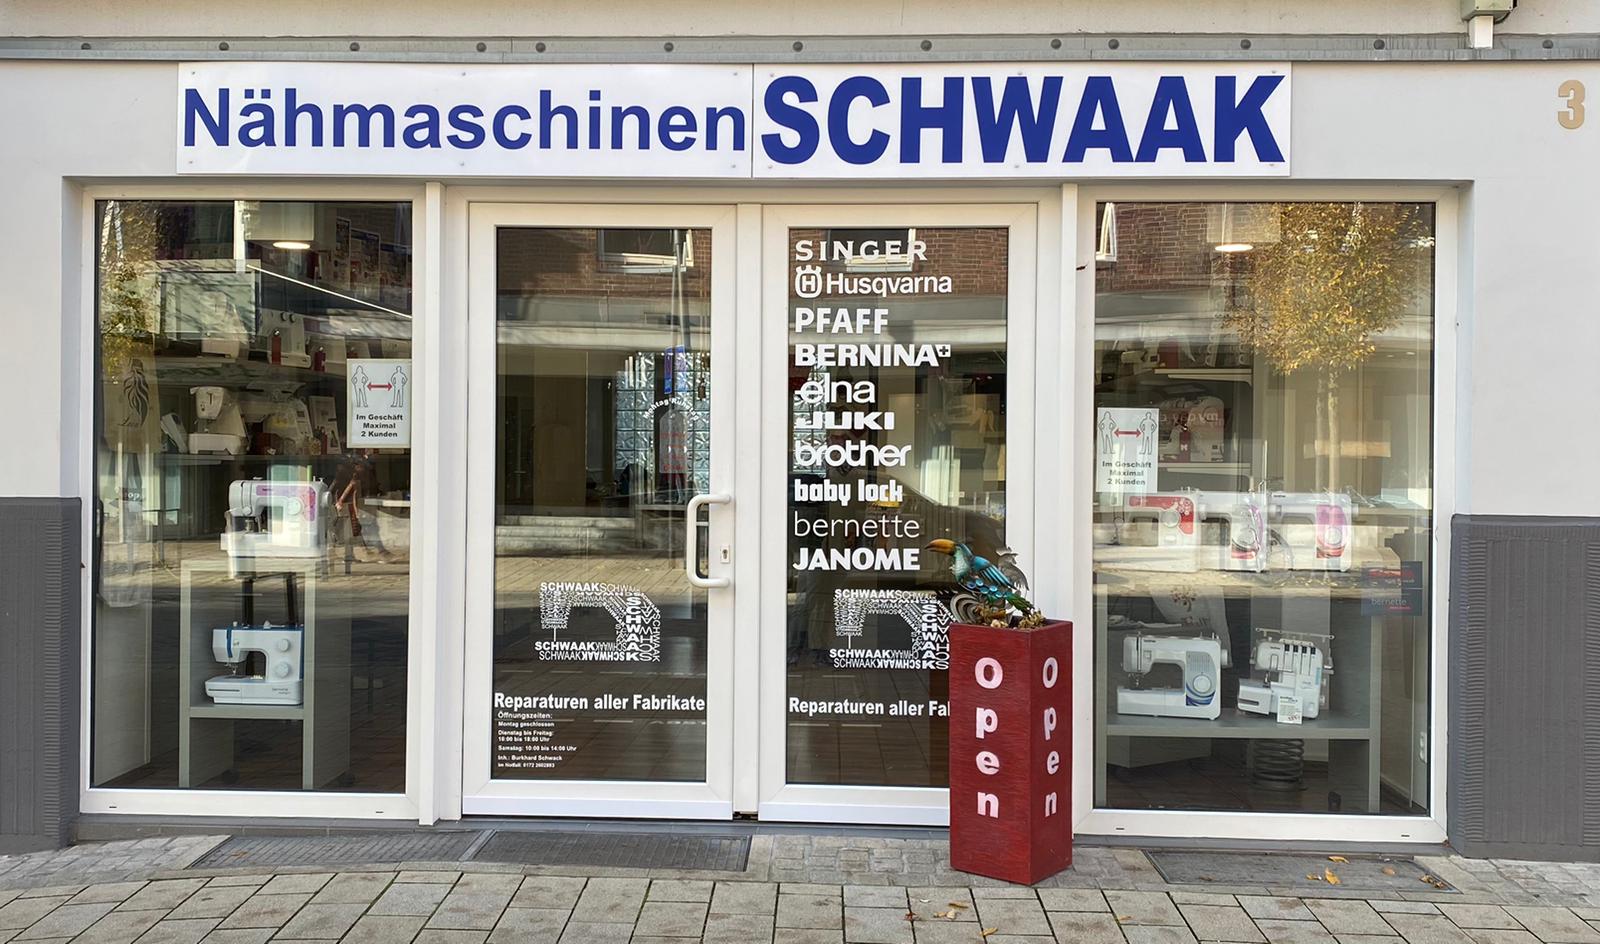 Nähmaschinen SCHWAAK, Korbmacherstr. 3 in Wesel